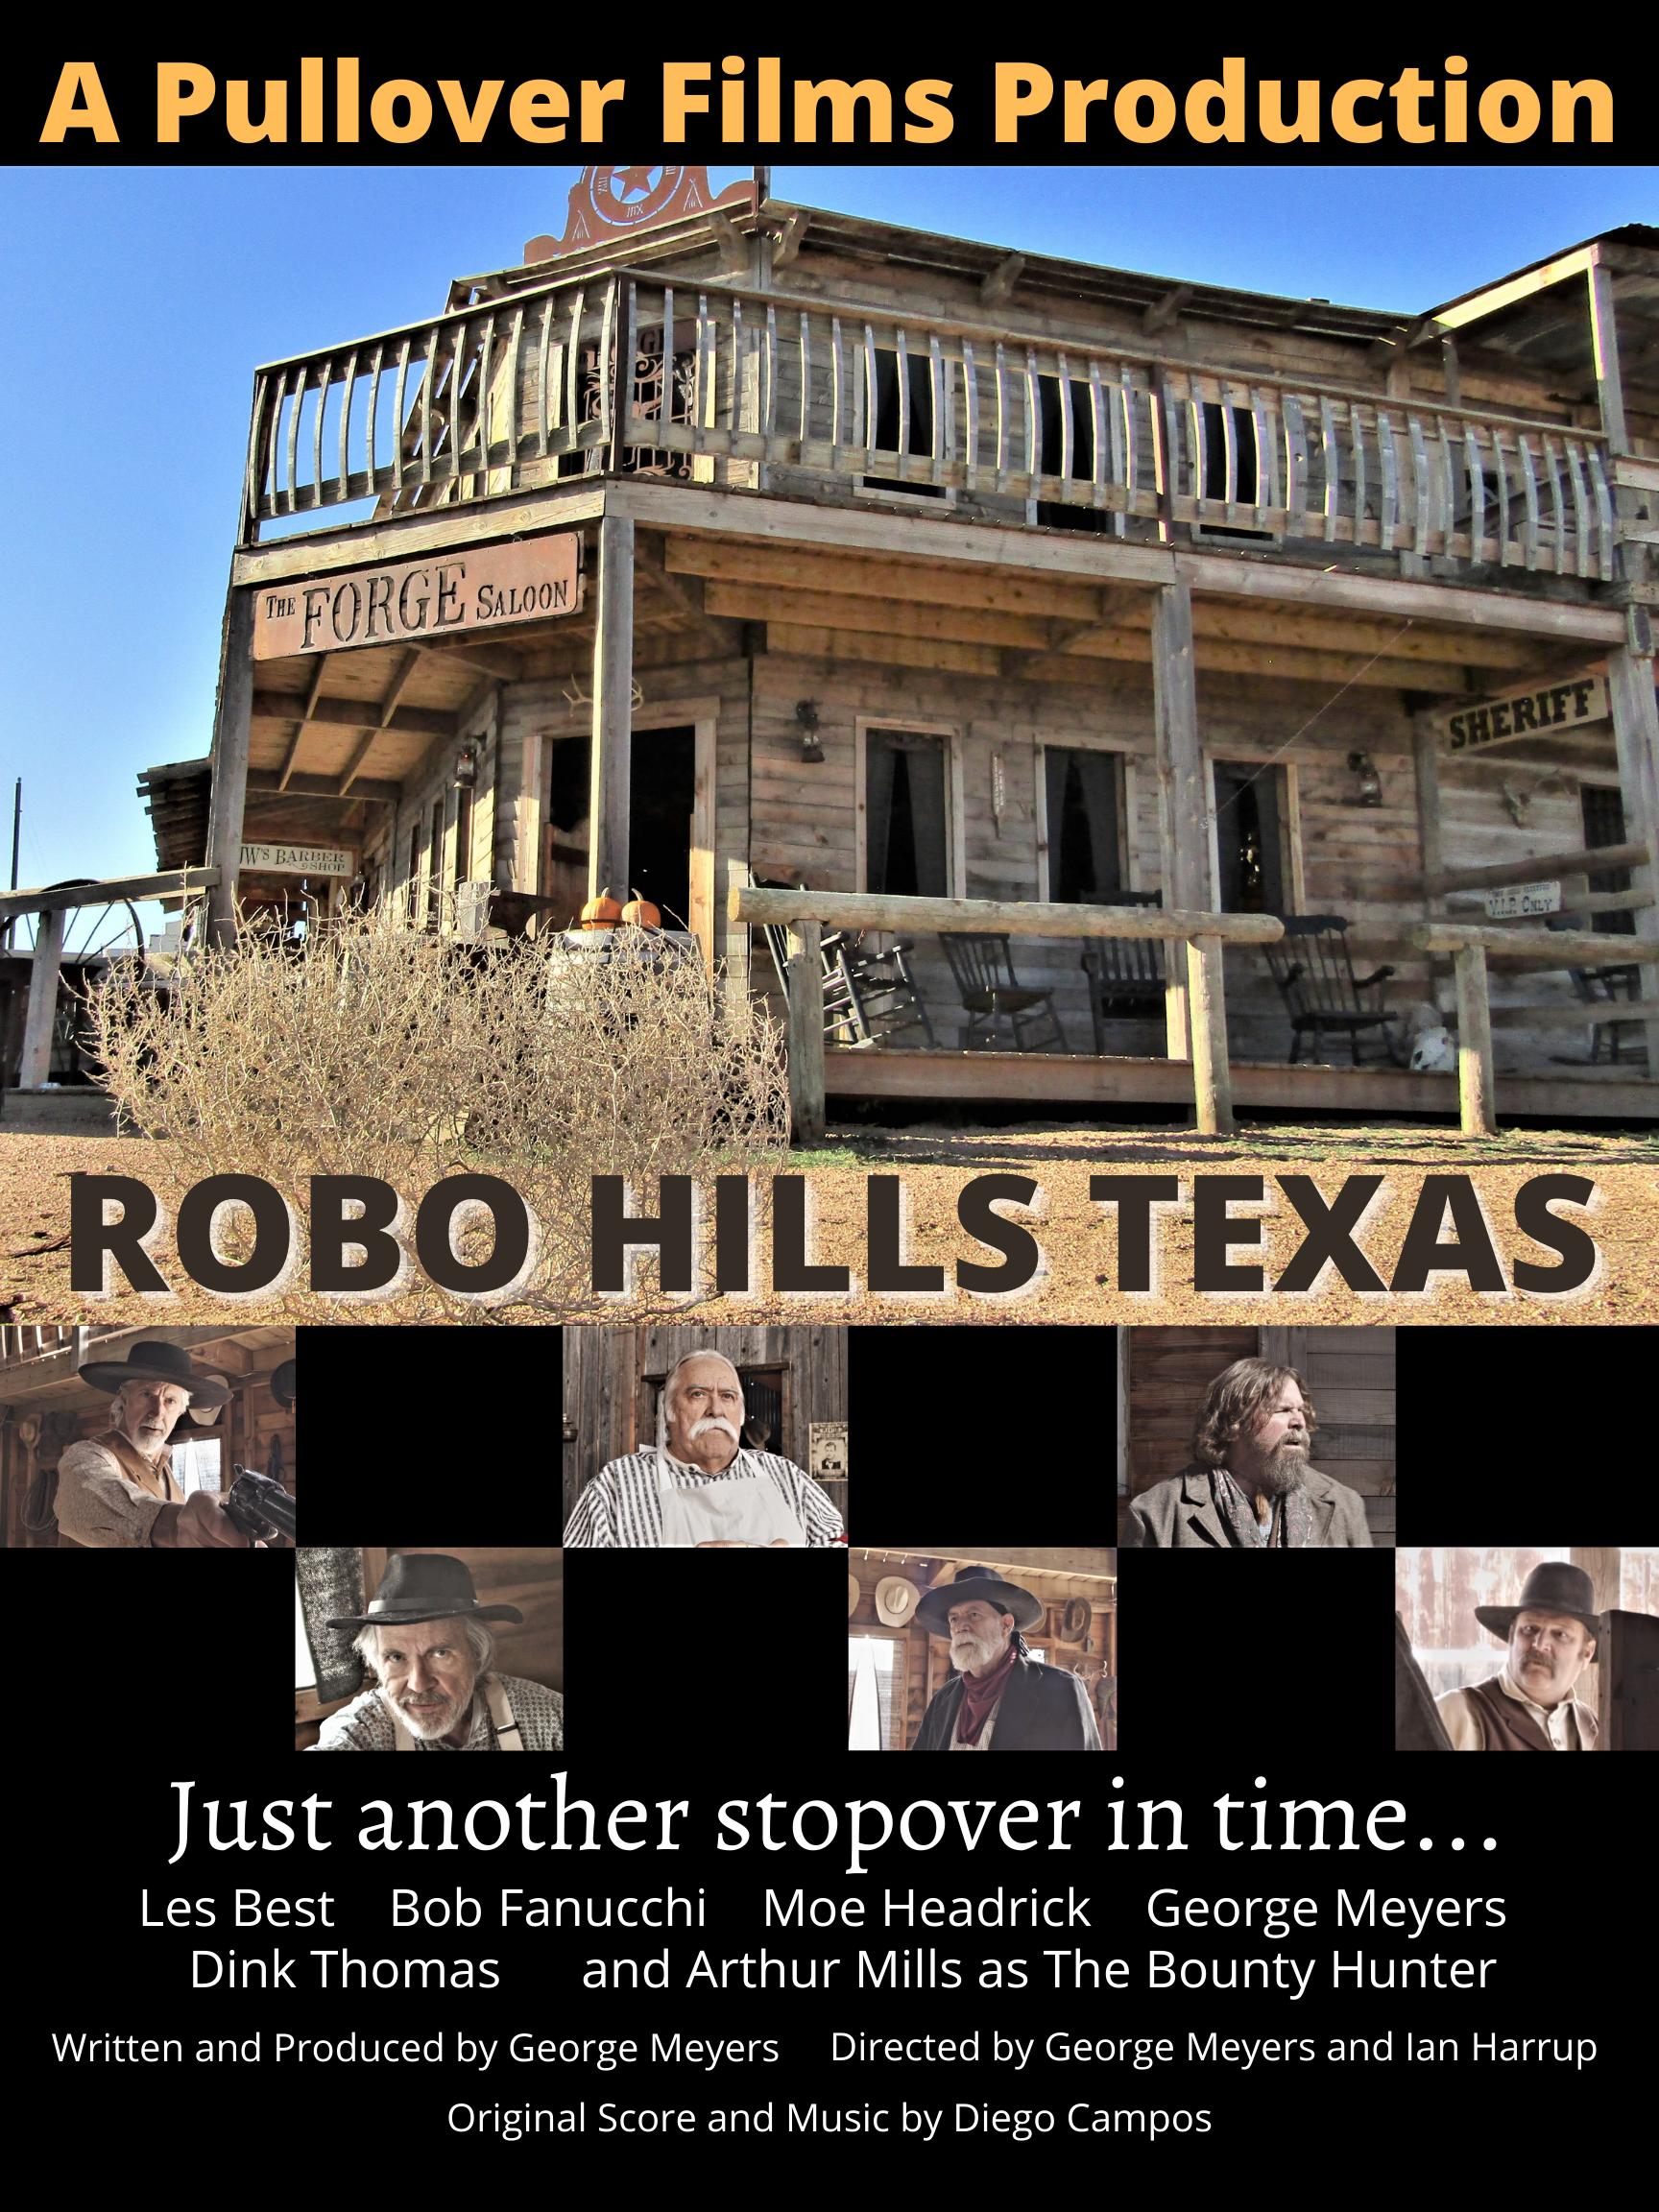 Robo Hills Texas (2020)